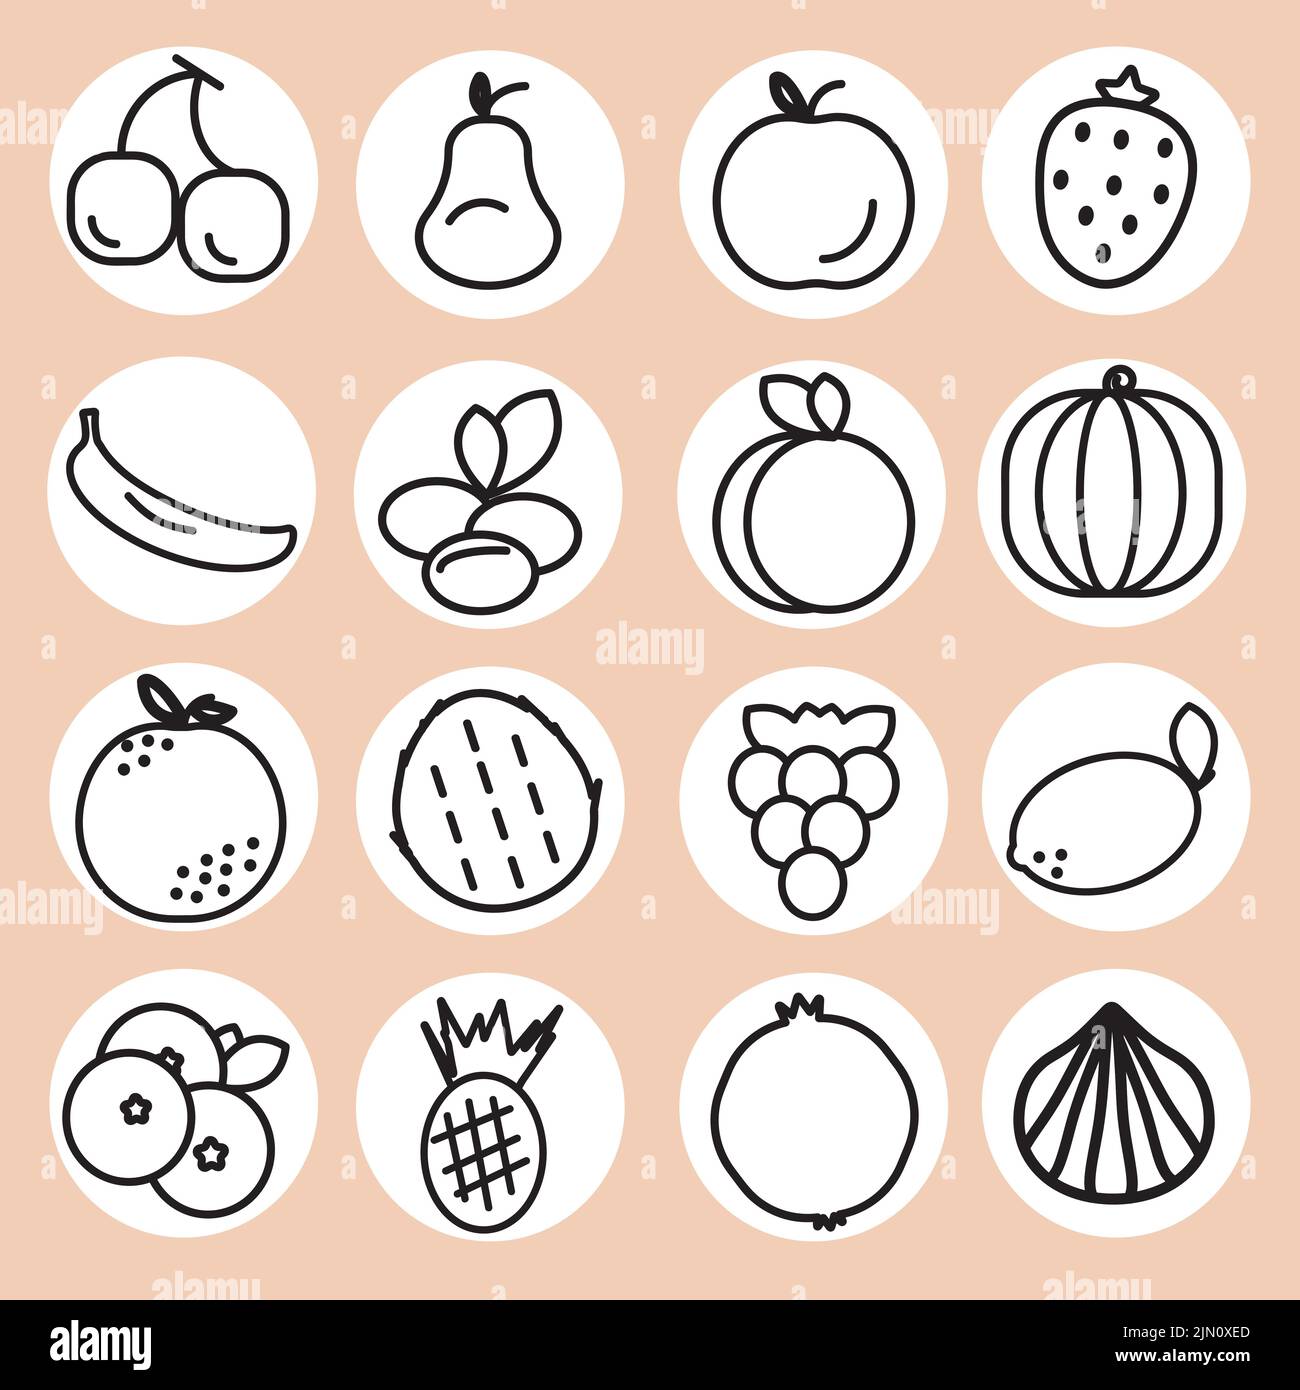 Set aus sechzehn Fruchtsymbolen. Früchte schwarze Umrisse auf den weißen Aufklebern, beiger Hintergrund. Gesunde Ernährung Obst essen. Vektorgrafik. Stock Vektor